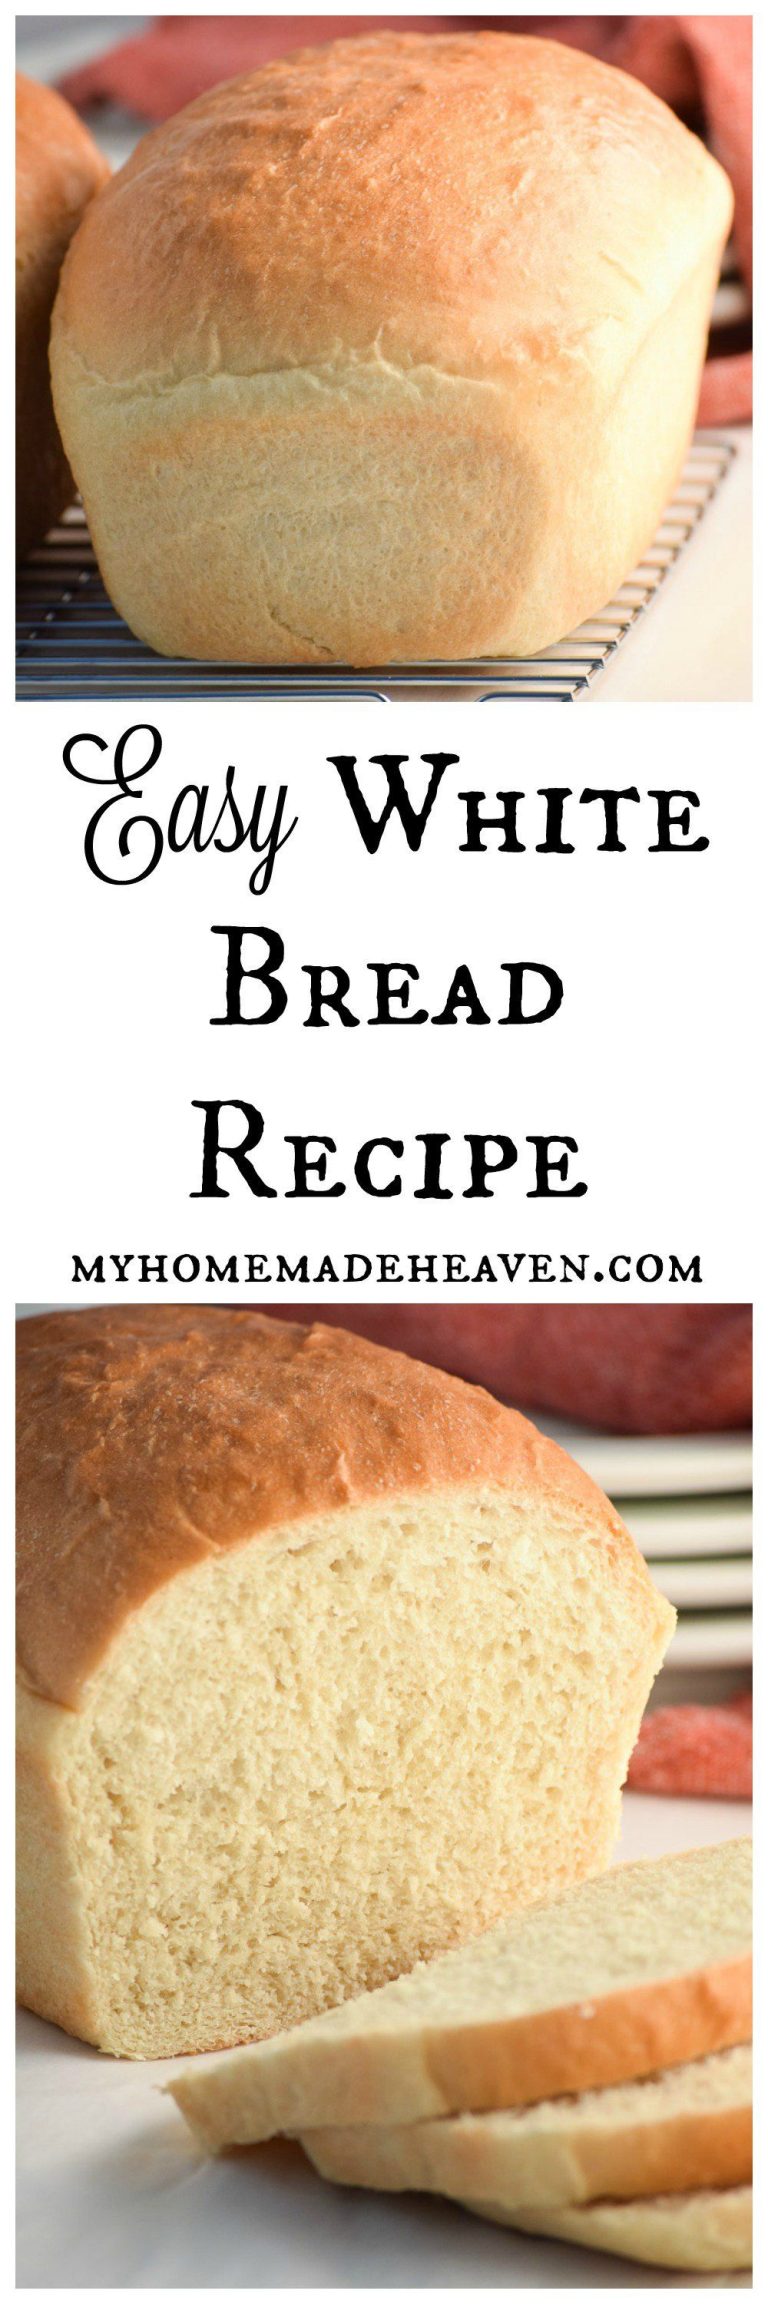 Homemade White Bread Recipe For Bread Machine